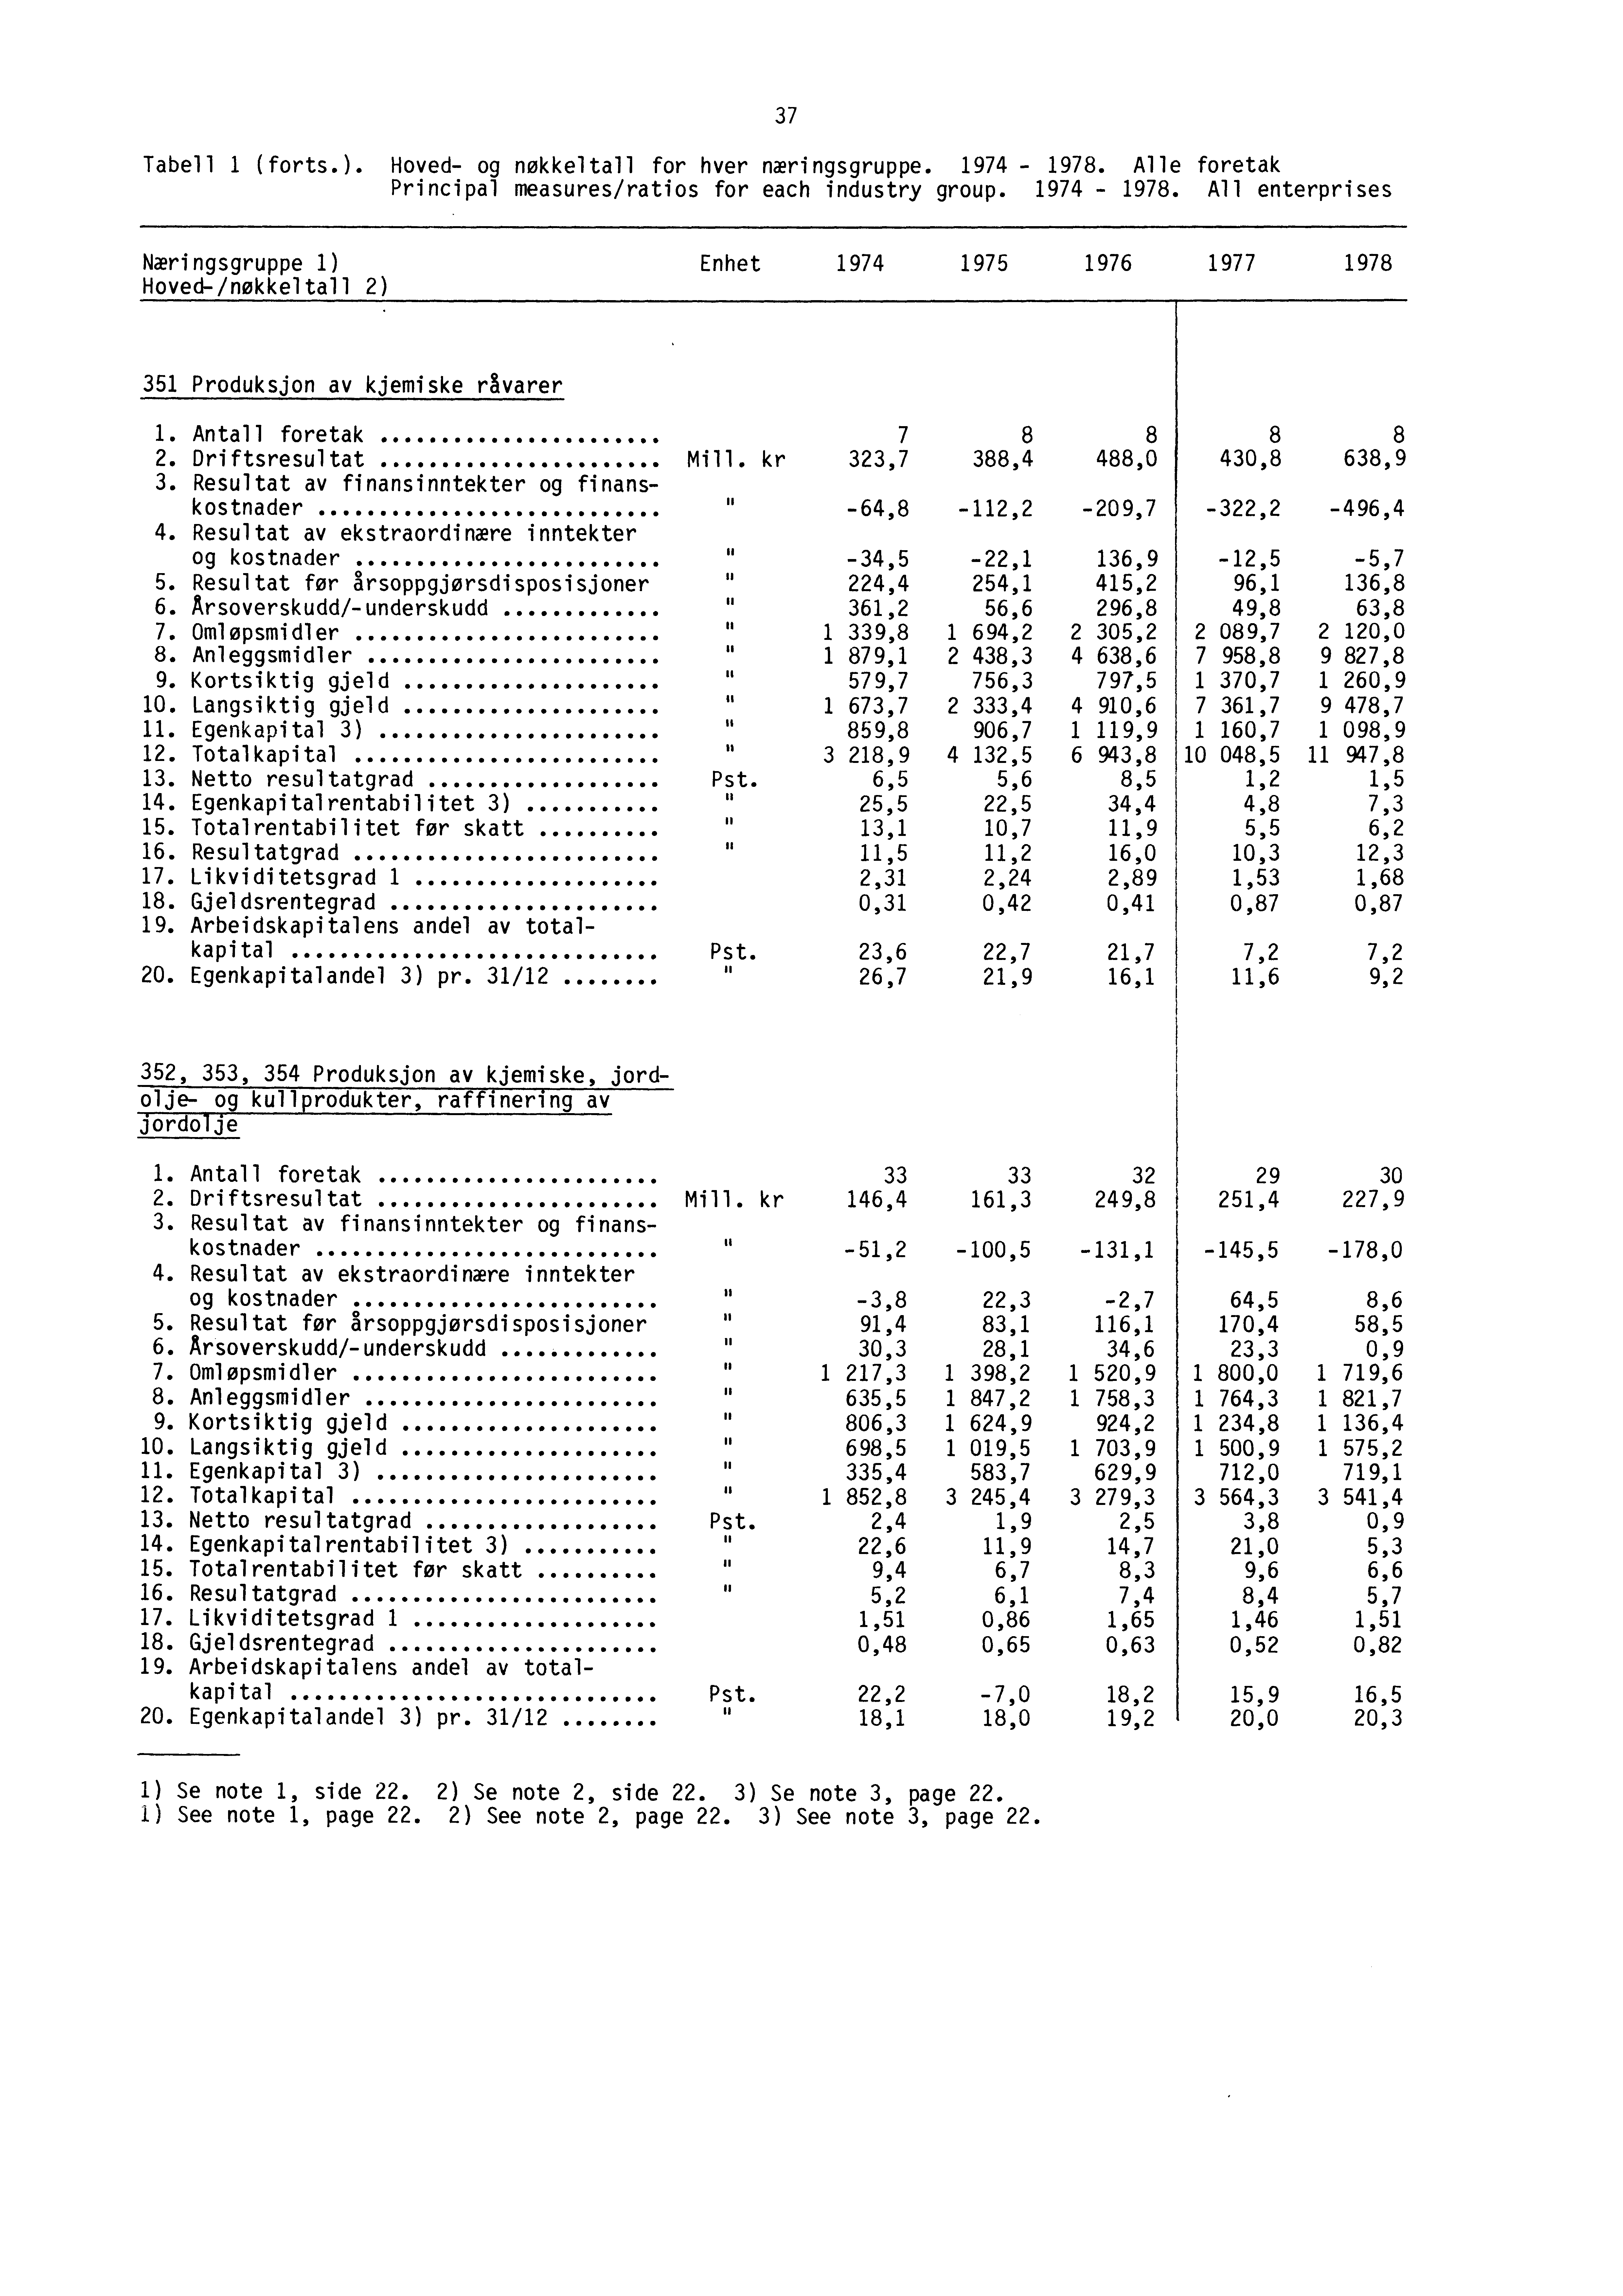 Tabell 1 (forts.). Hoved- og nøkkeltall for hver næringsgruppe. 1974-1978.